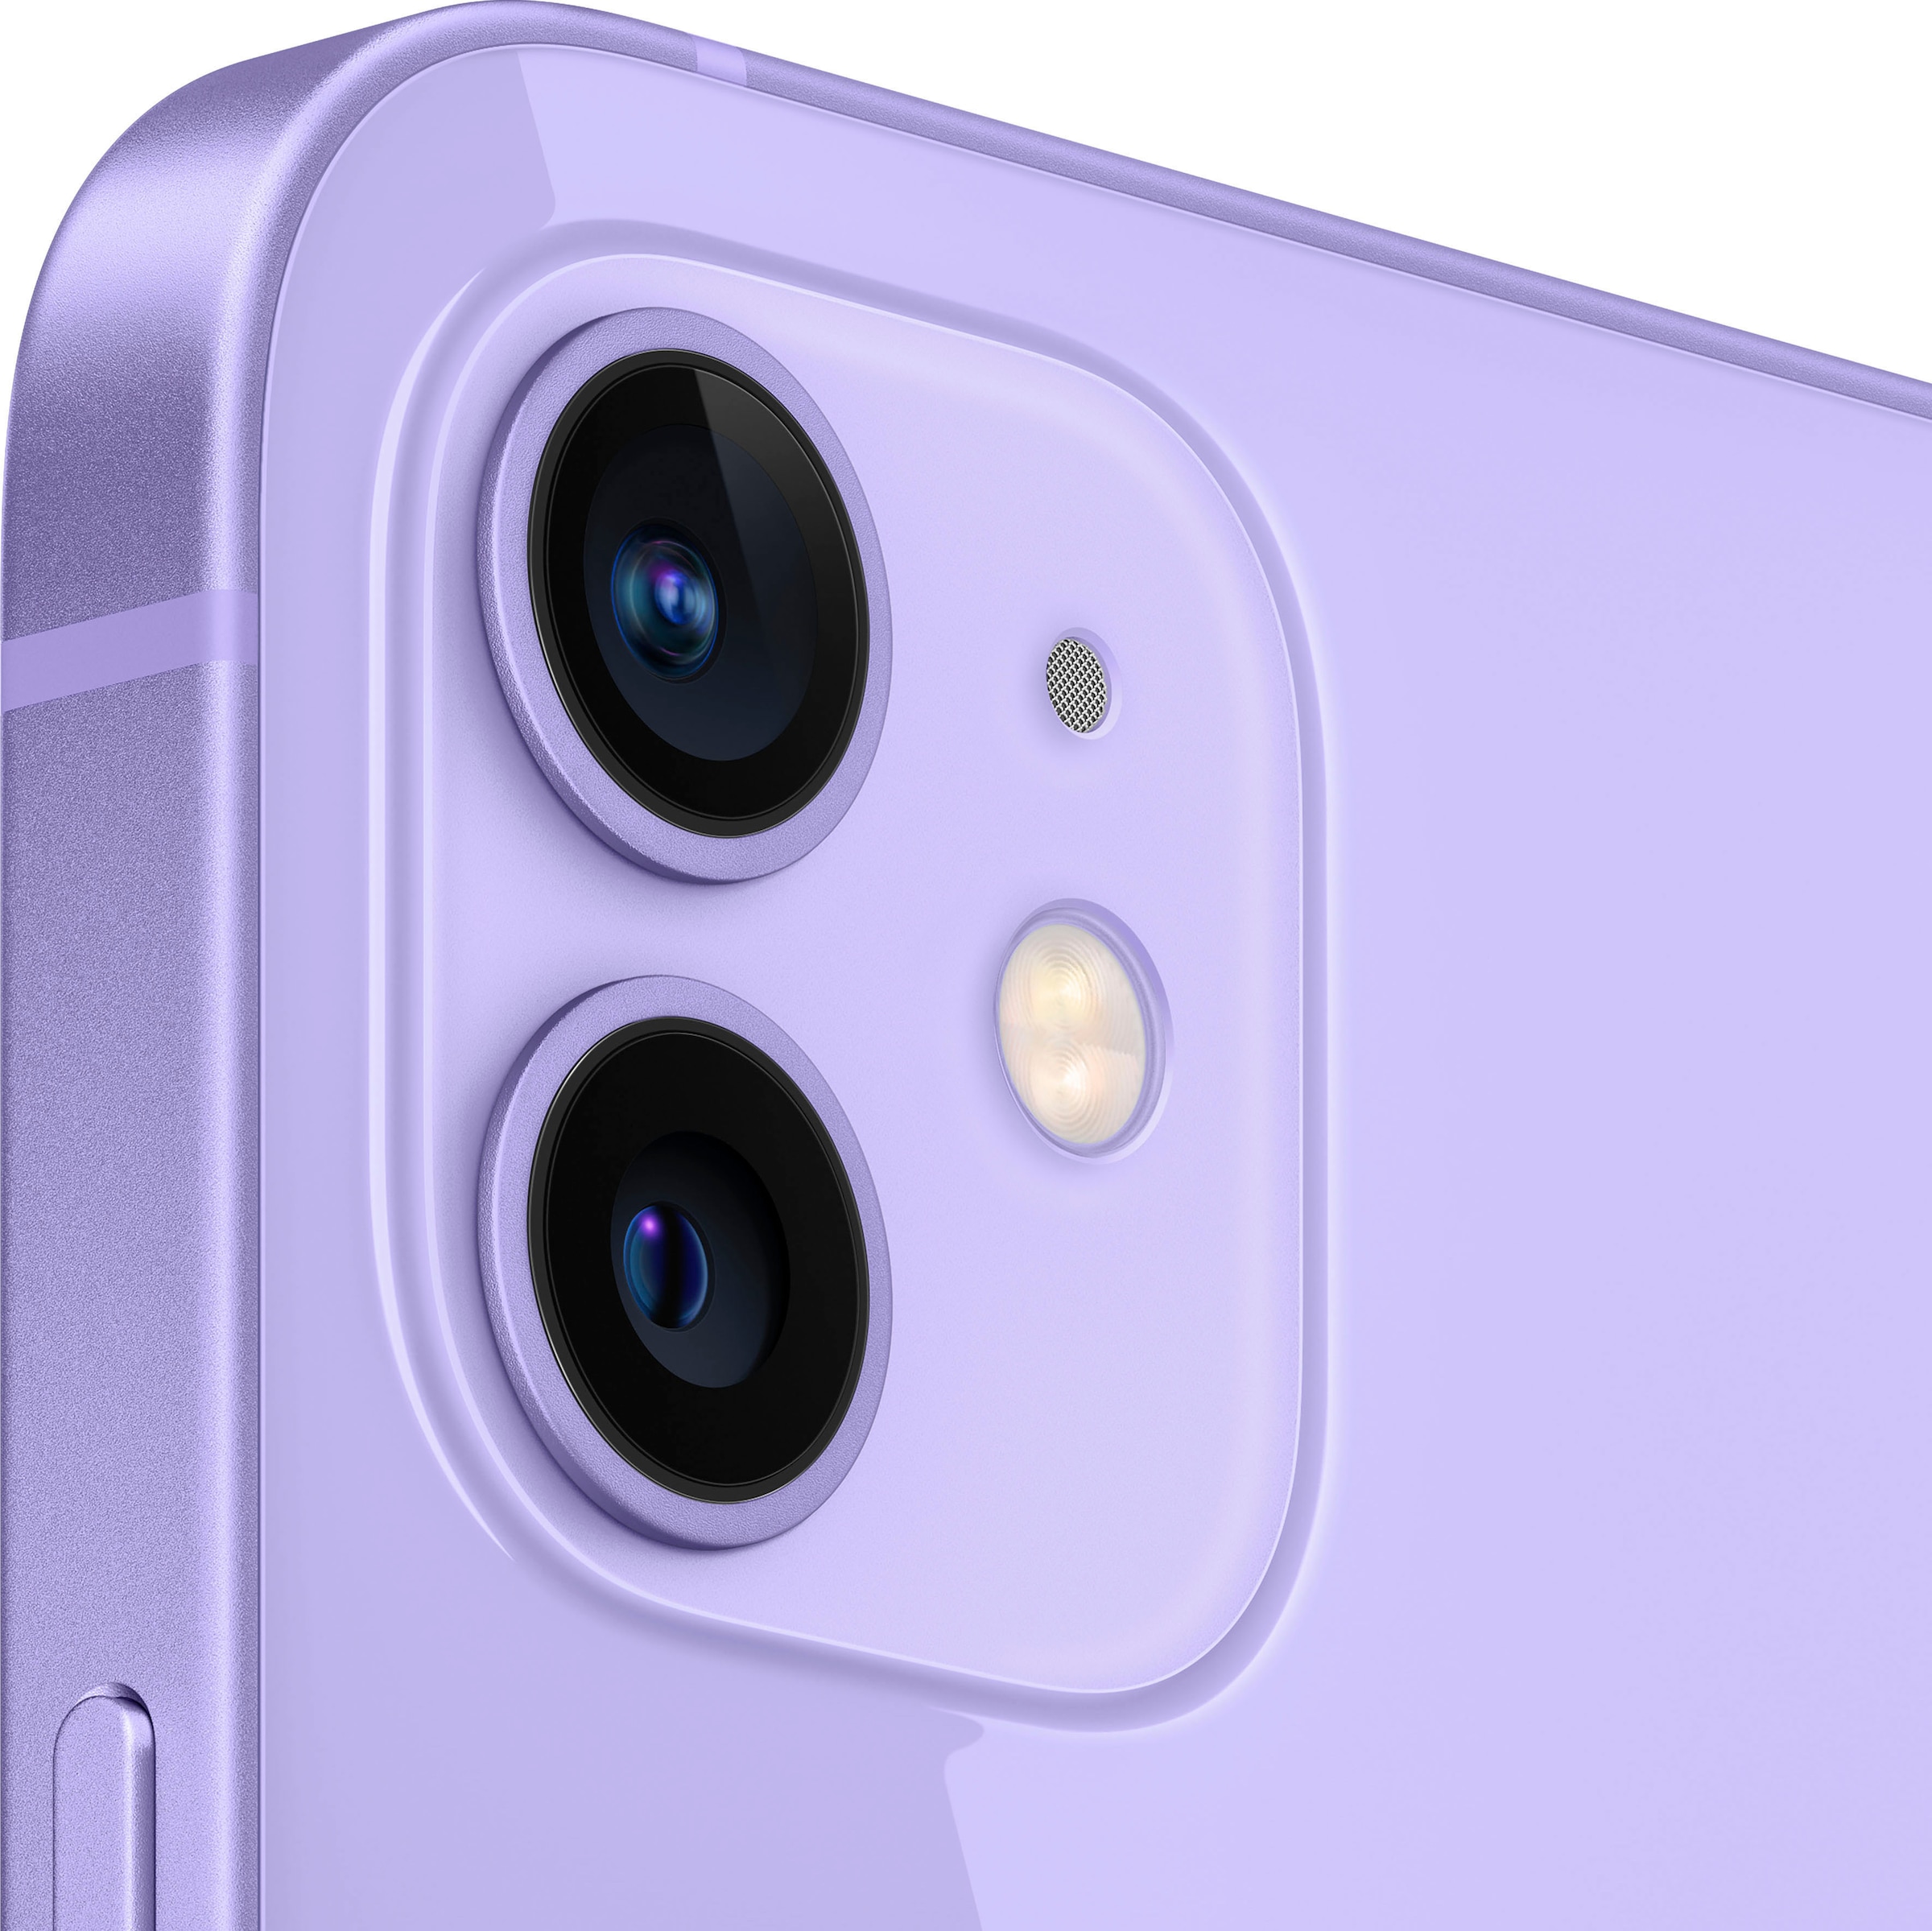 Apple Smartphone »iPhone 12 64GB«, purple, 15,5 cm/6,1 Zoll, 64 GB Speicherplatz, 12 MP Kamera, ohne Strom Adapter und Kopfhörer, kompatibel mit AirPods, Earpods